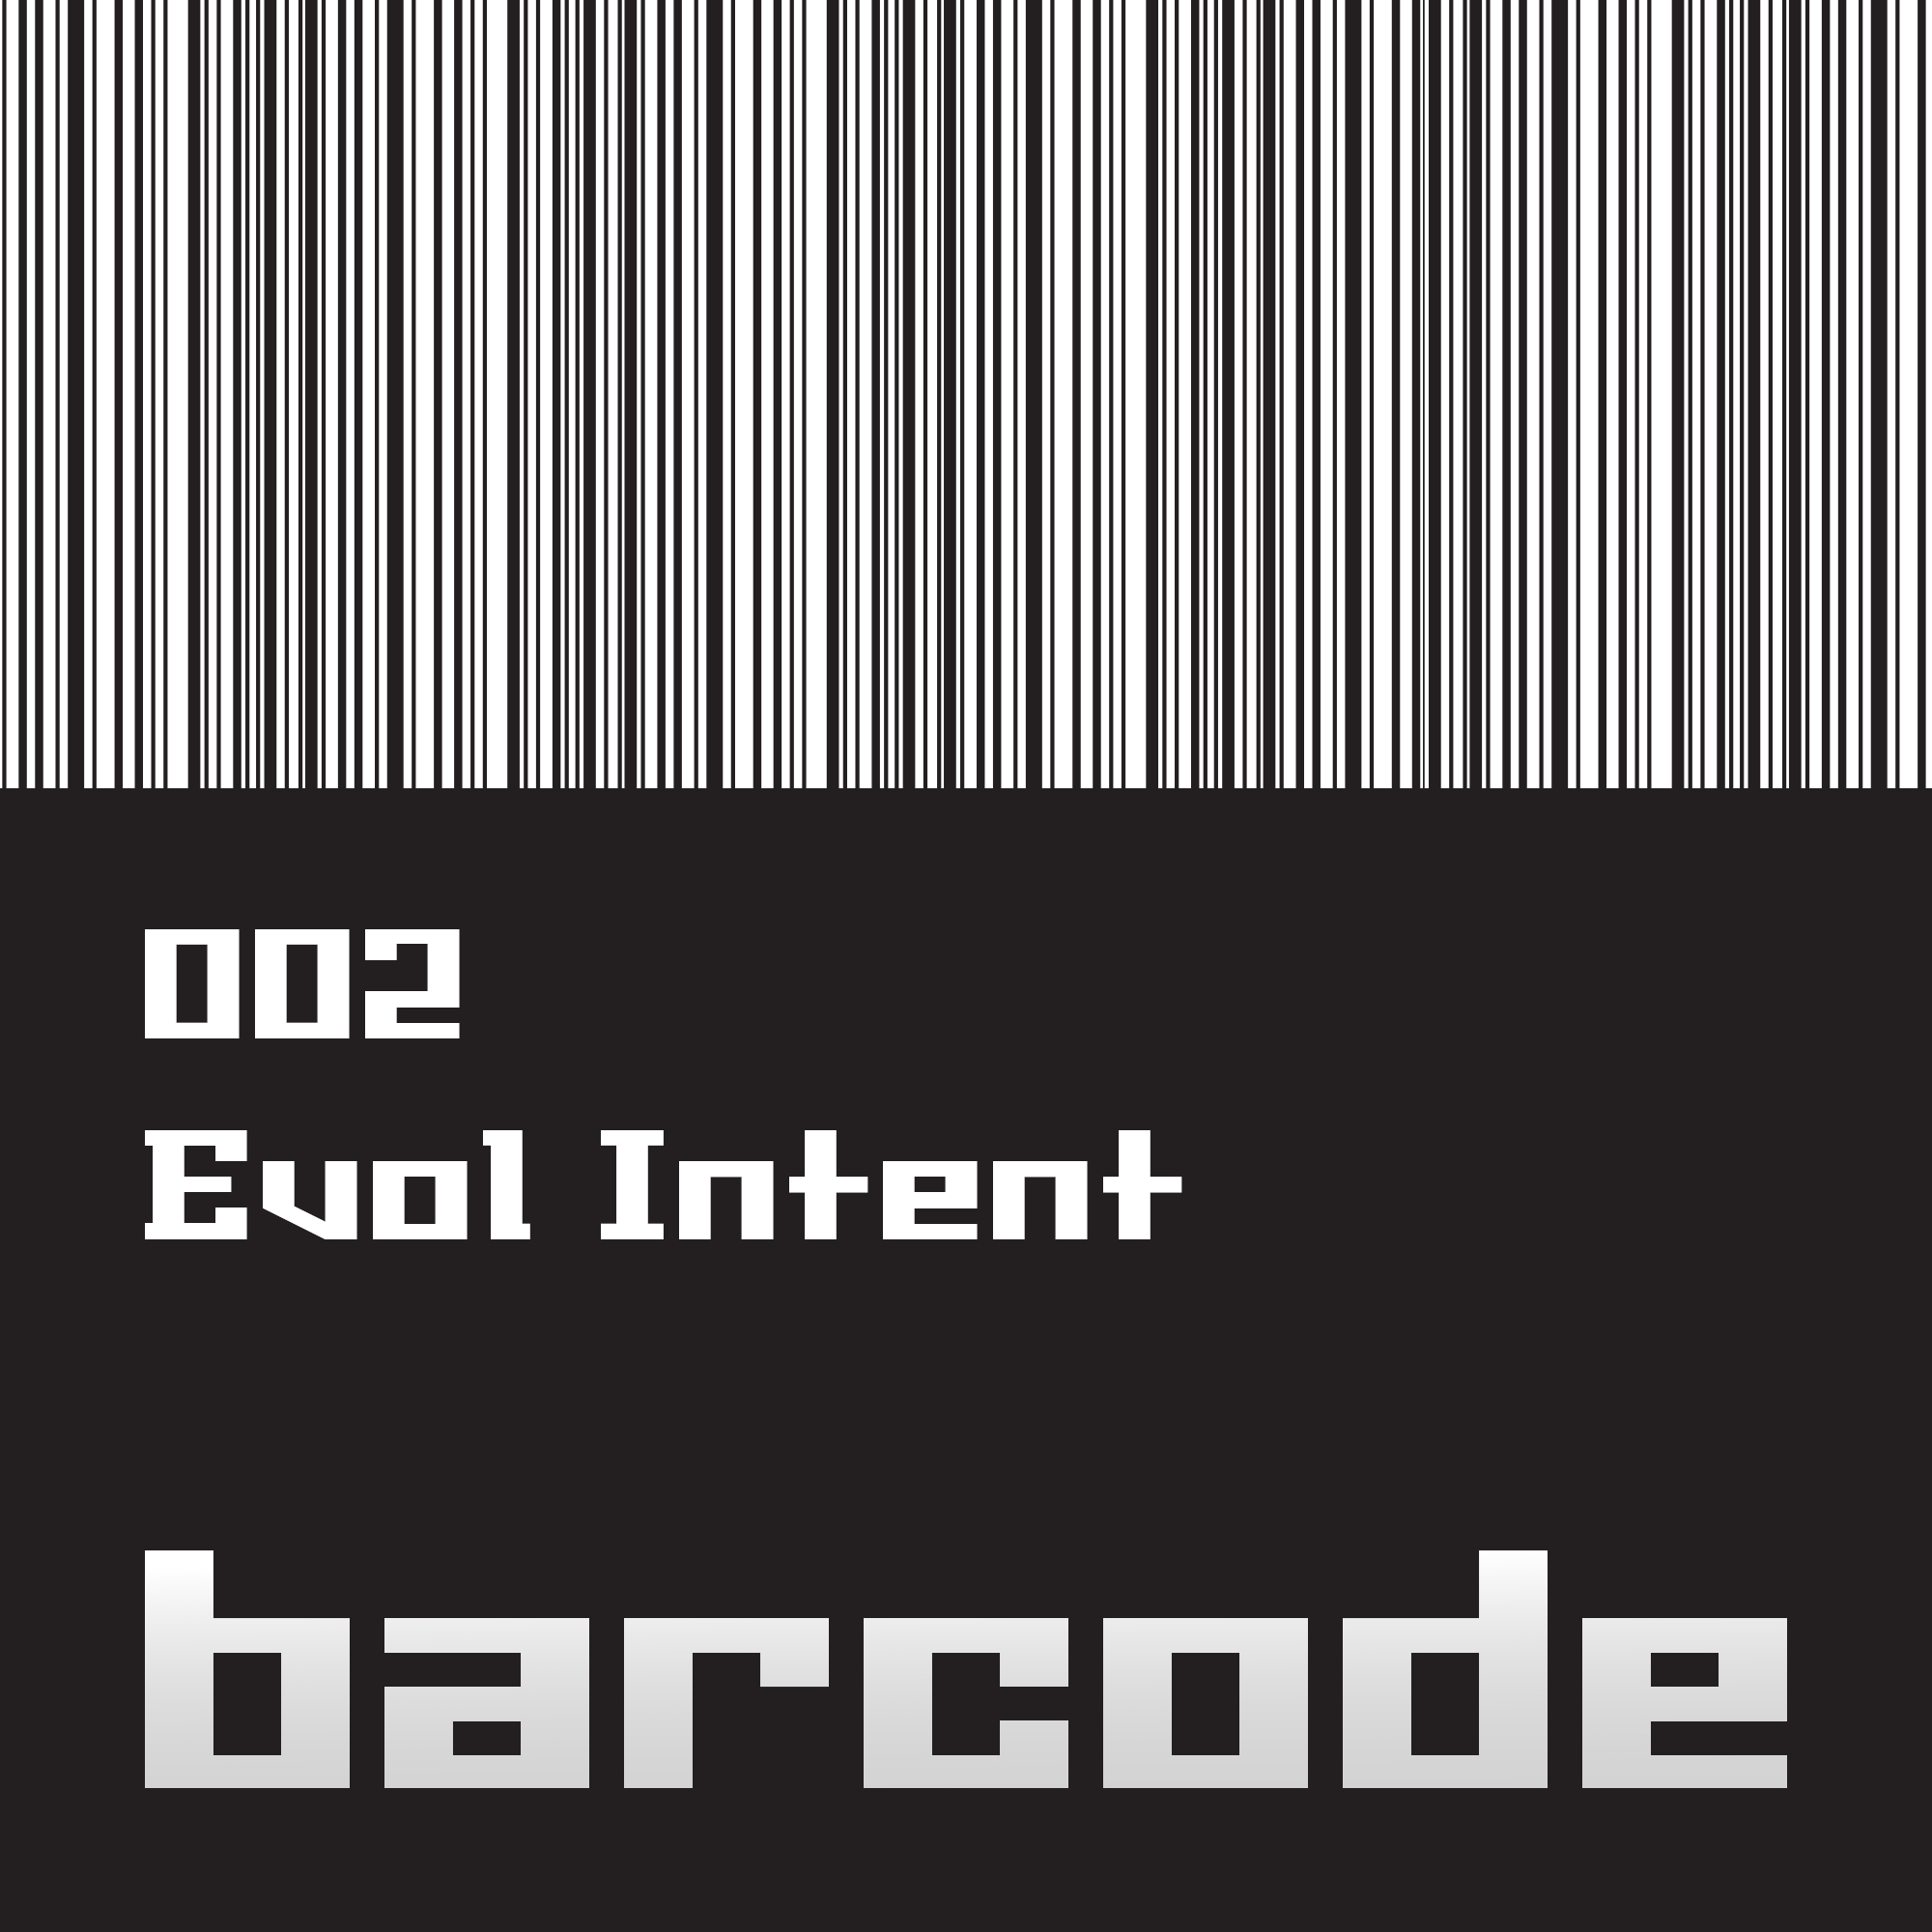 Barcode002.jpg